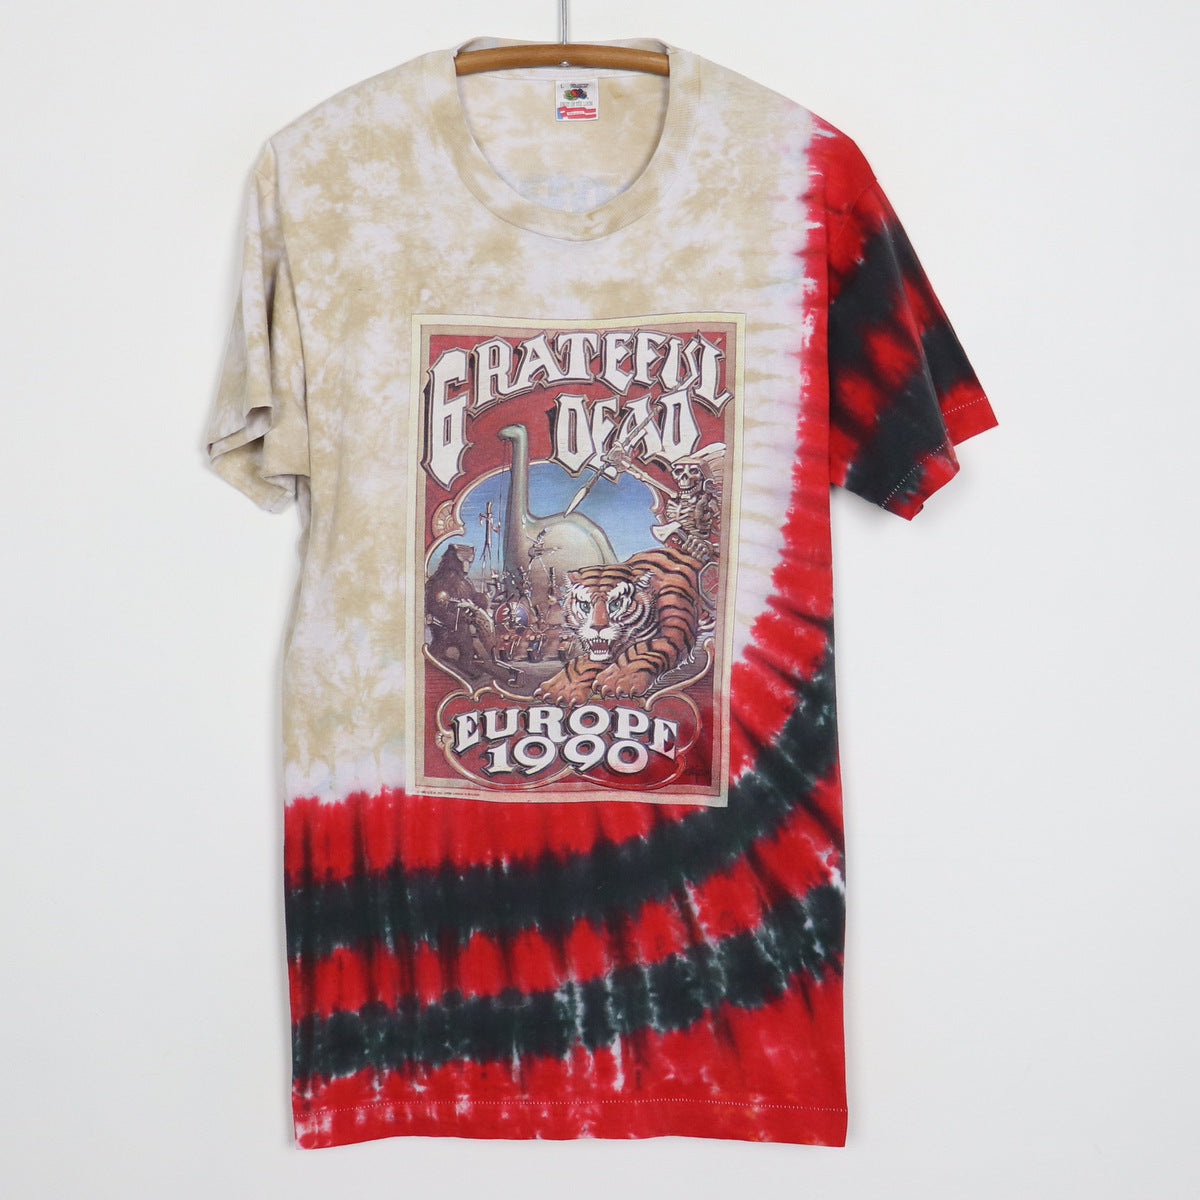 Vintage Grateful Dead Dead Head Tye-Dye T-Shirt